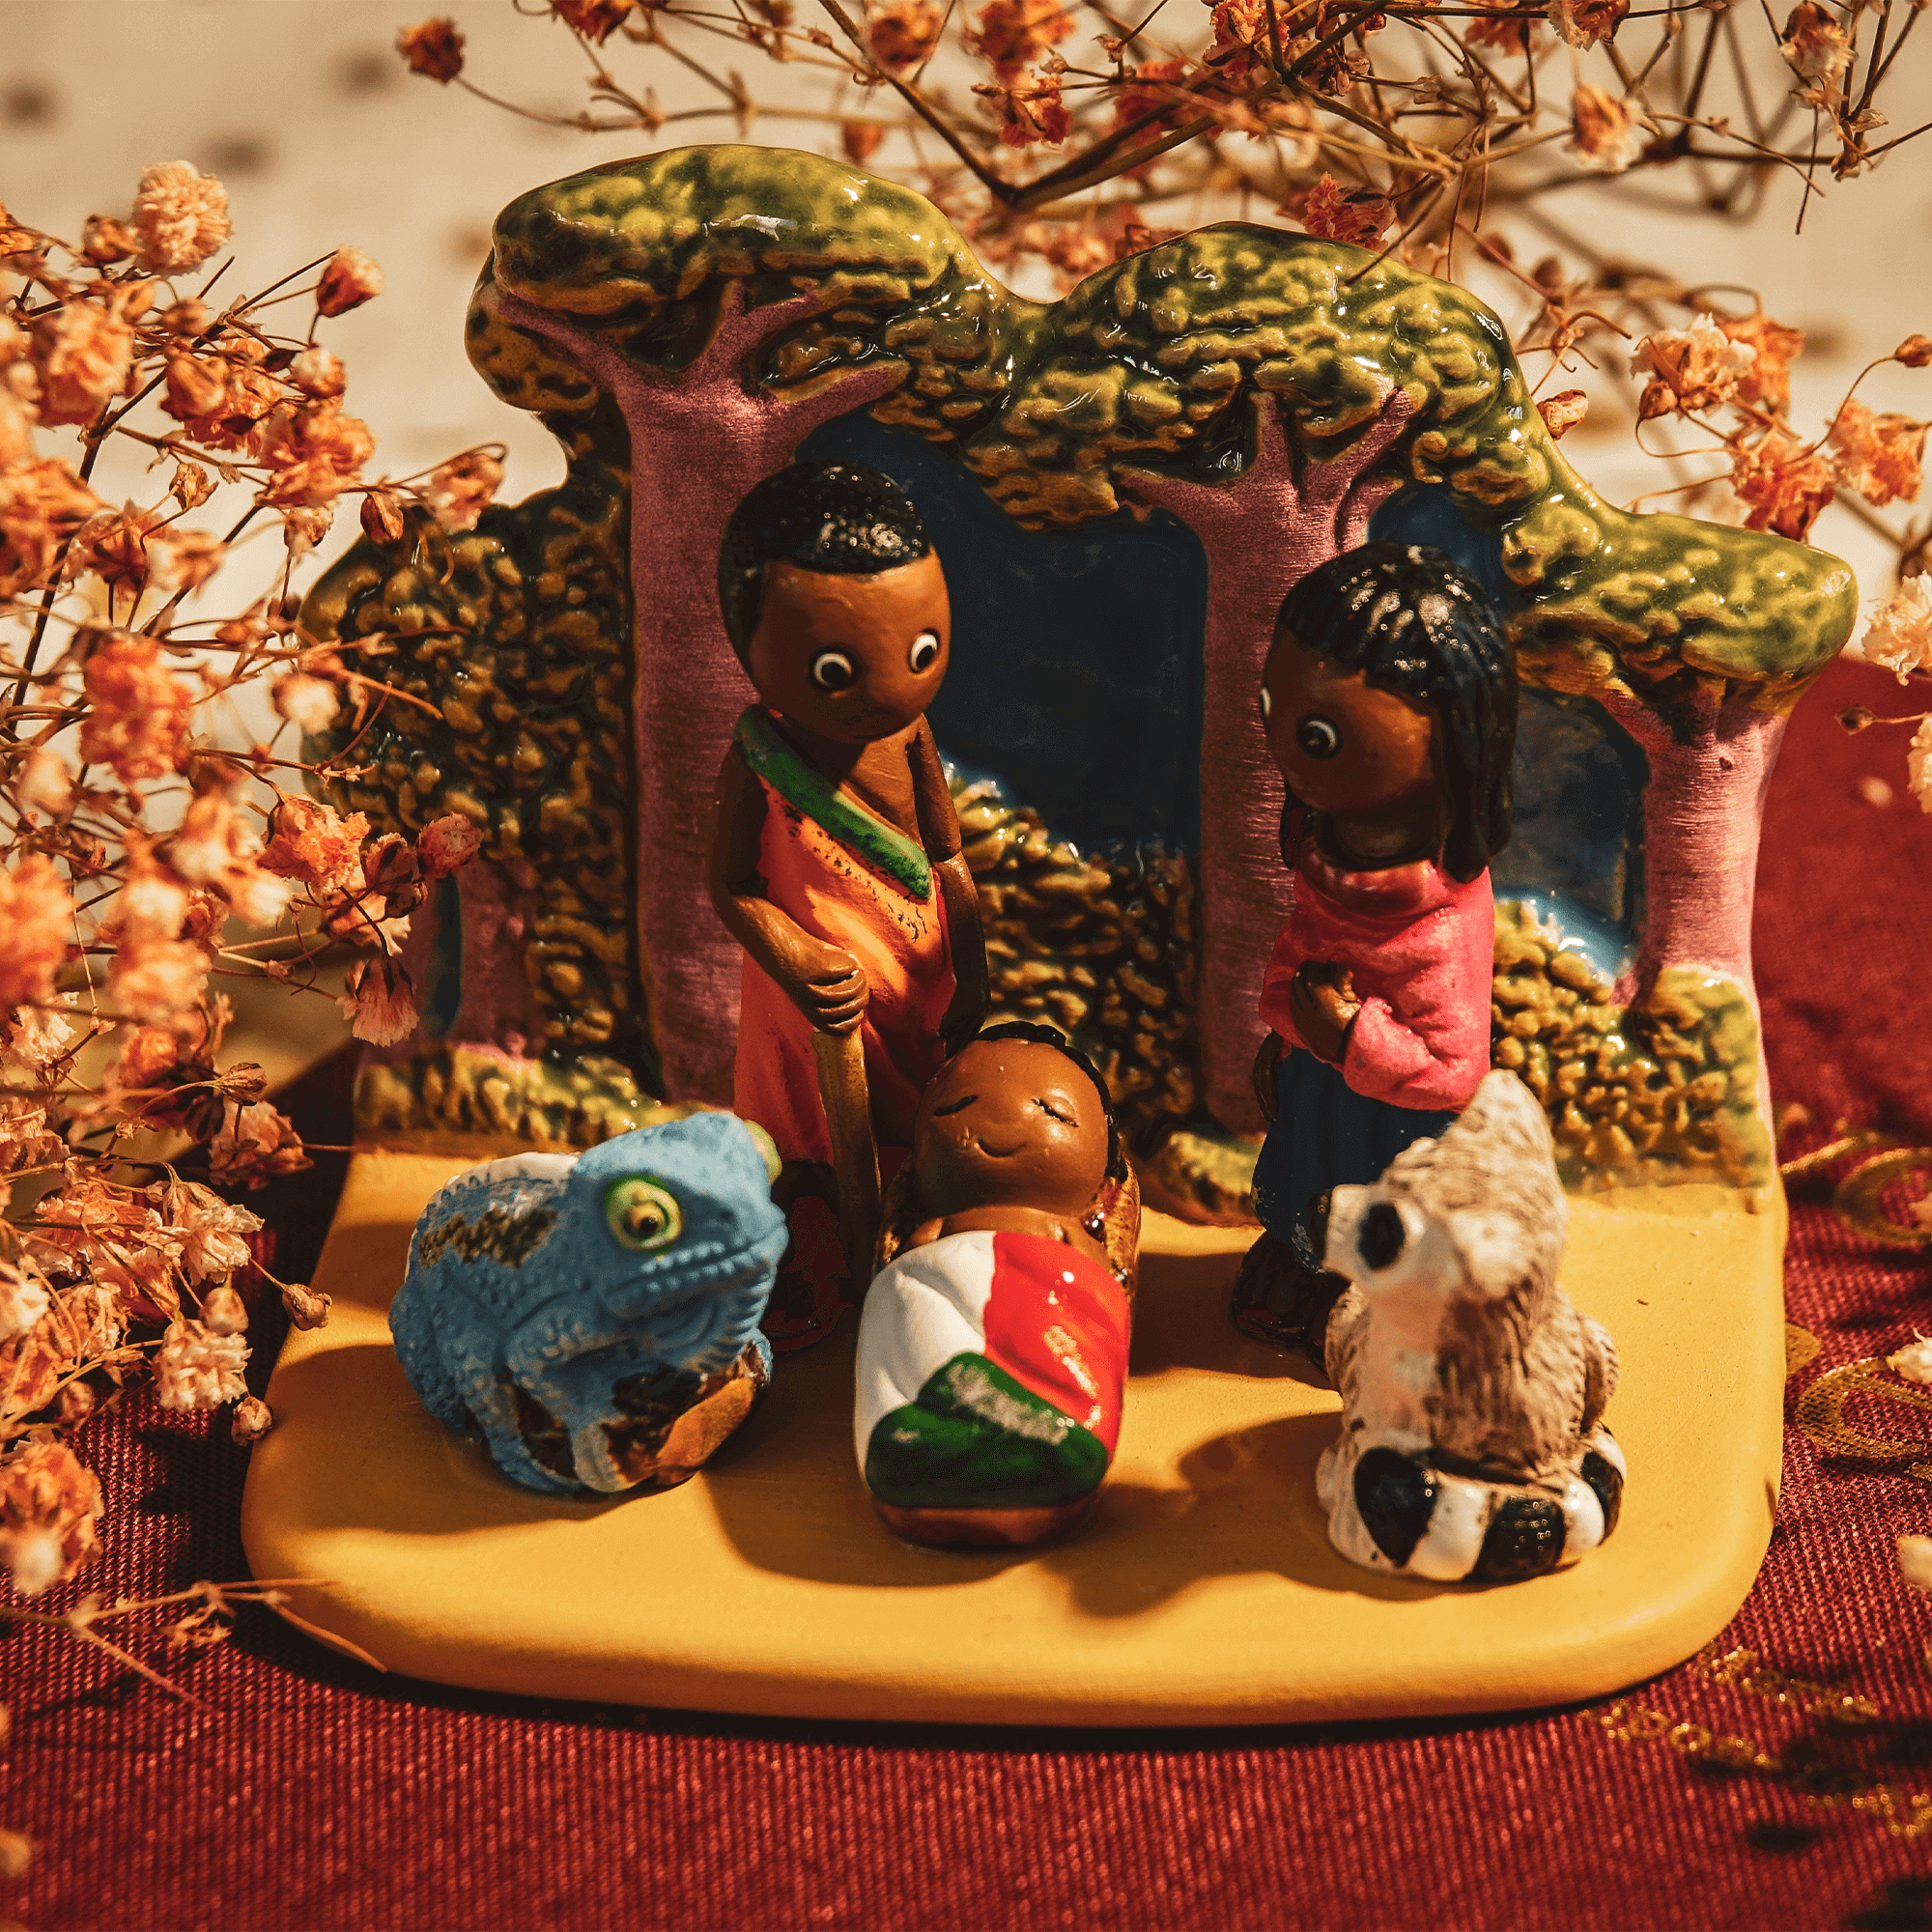 Crèche du Monde - Madagascar. Collection Boutique de Fourvière : Crèches artisanales en céramique peinte à la main du Pérou, certifiées Fair Trade. Objets de décoration de Noël.